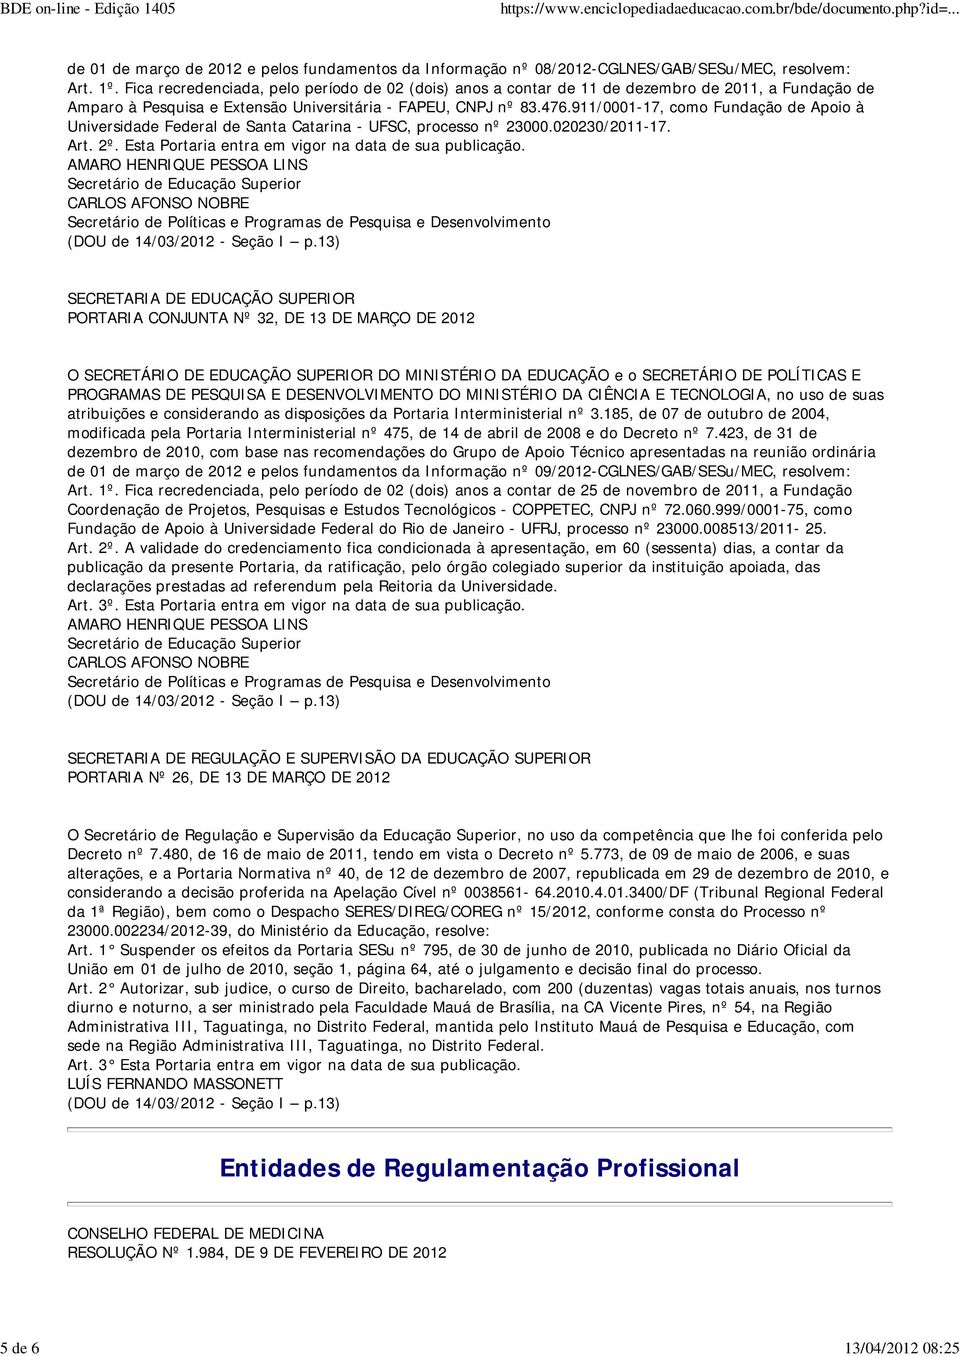 911/0001-17, como Fundação de Apoio à Universidade Federal de Santa Catarina - UFSC, processo nº 23000.020230/2011-17.